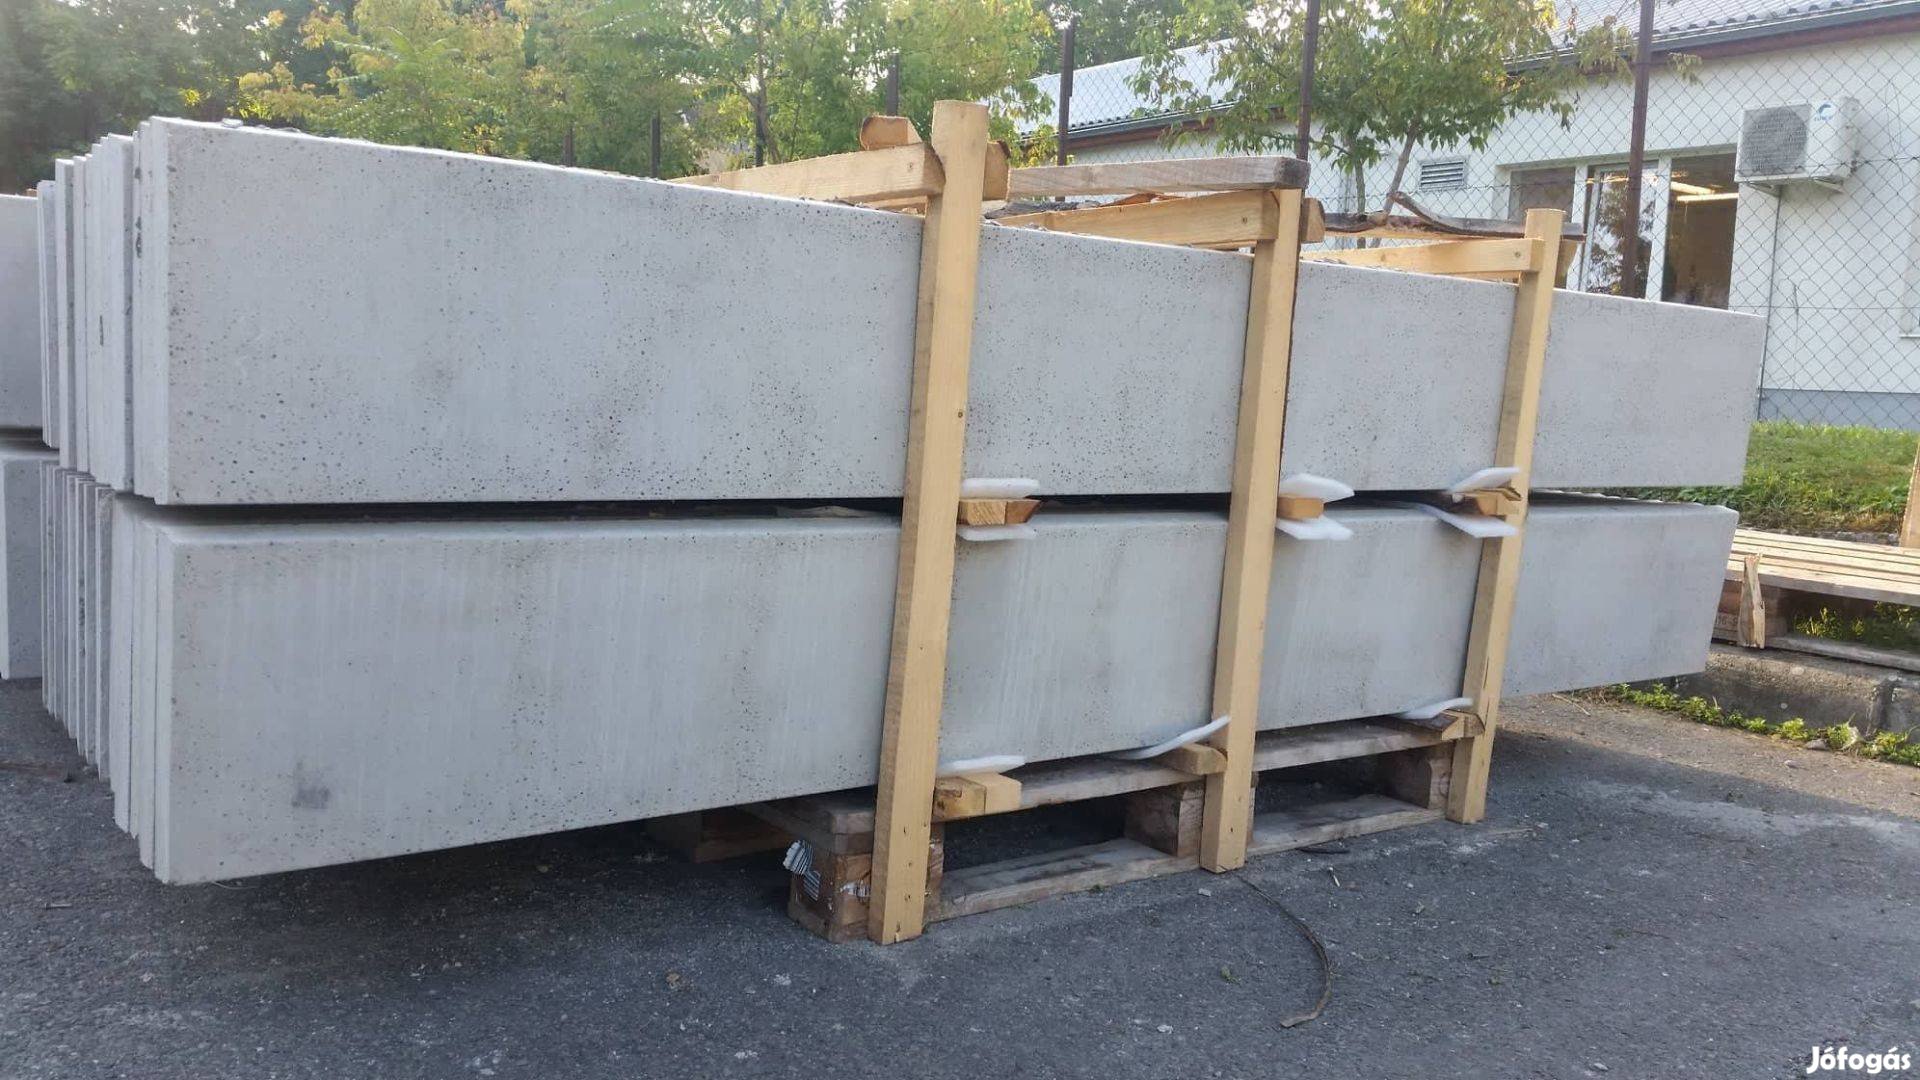 Csavart vadháló drótfonat drótháló kerítésdrót táblás kerítés építés